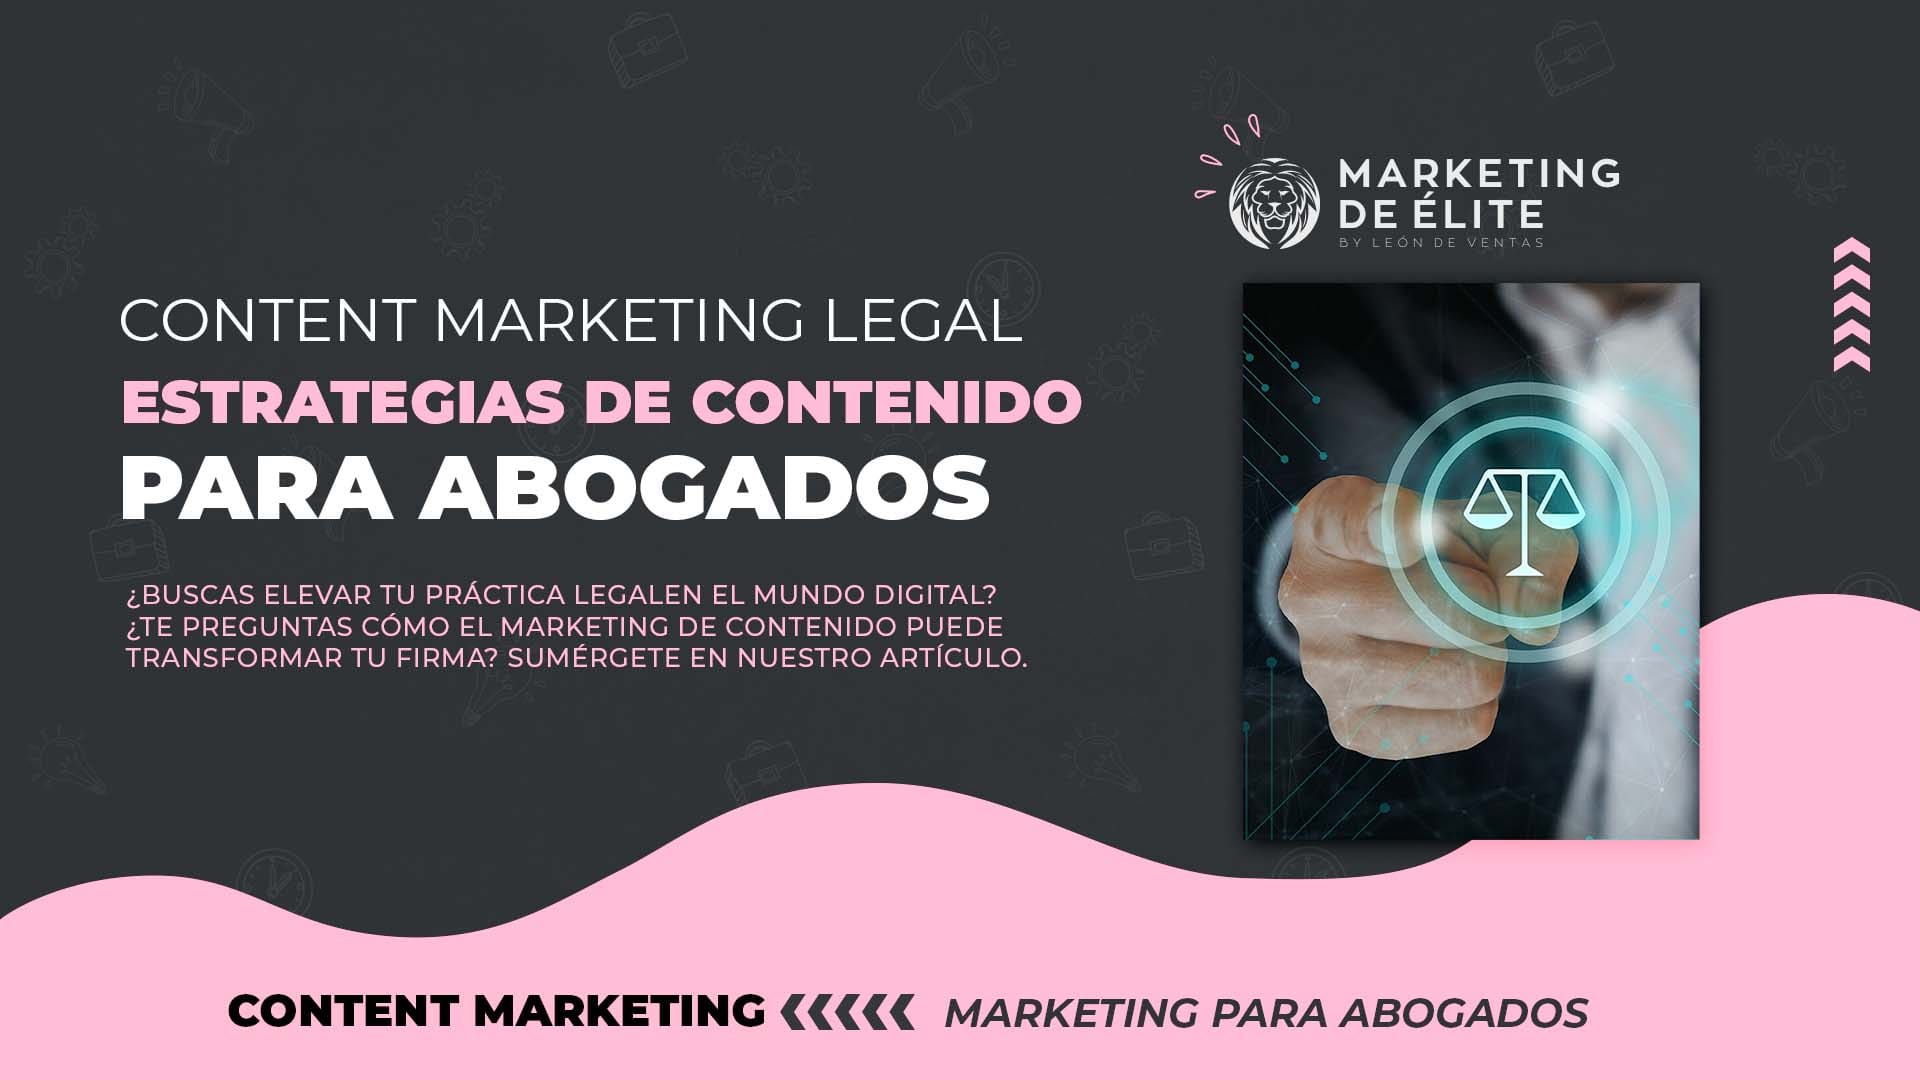 Las mejores estrategias de contenidos para abogados: content marketing legal